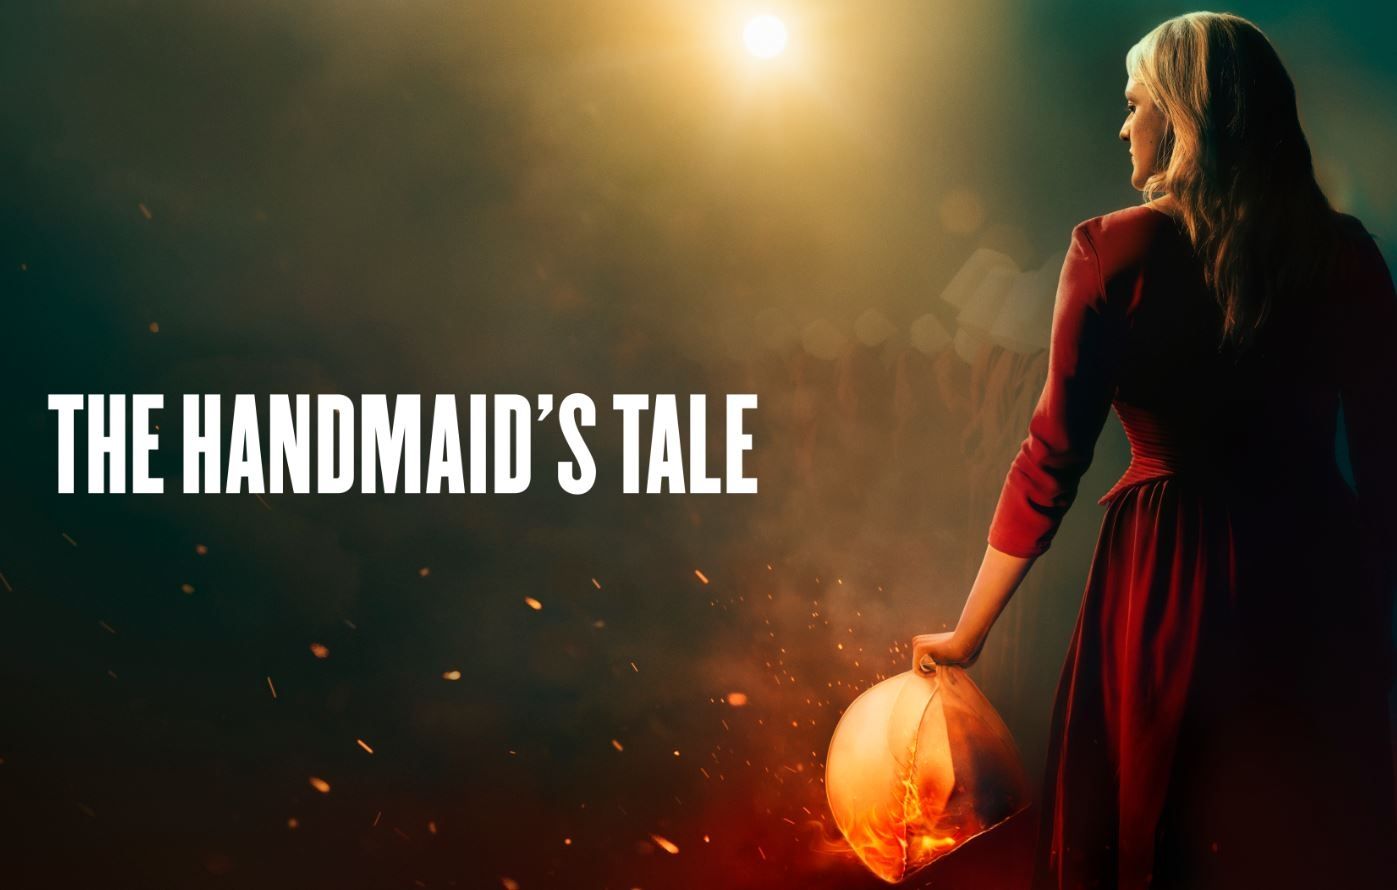 سریال «سرگذشت ندیمه» (The Handmaid's Tale) که بر اساس رمانی پرفروش از مارگارت اتوود به همین نام ساخته شده از همان فصل اول خود که در سال 2017 از شبکه Hulu منتشر شد